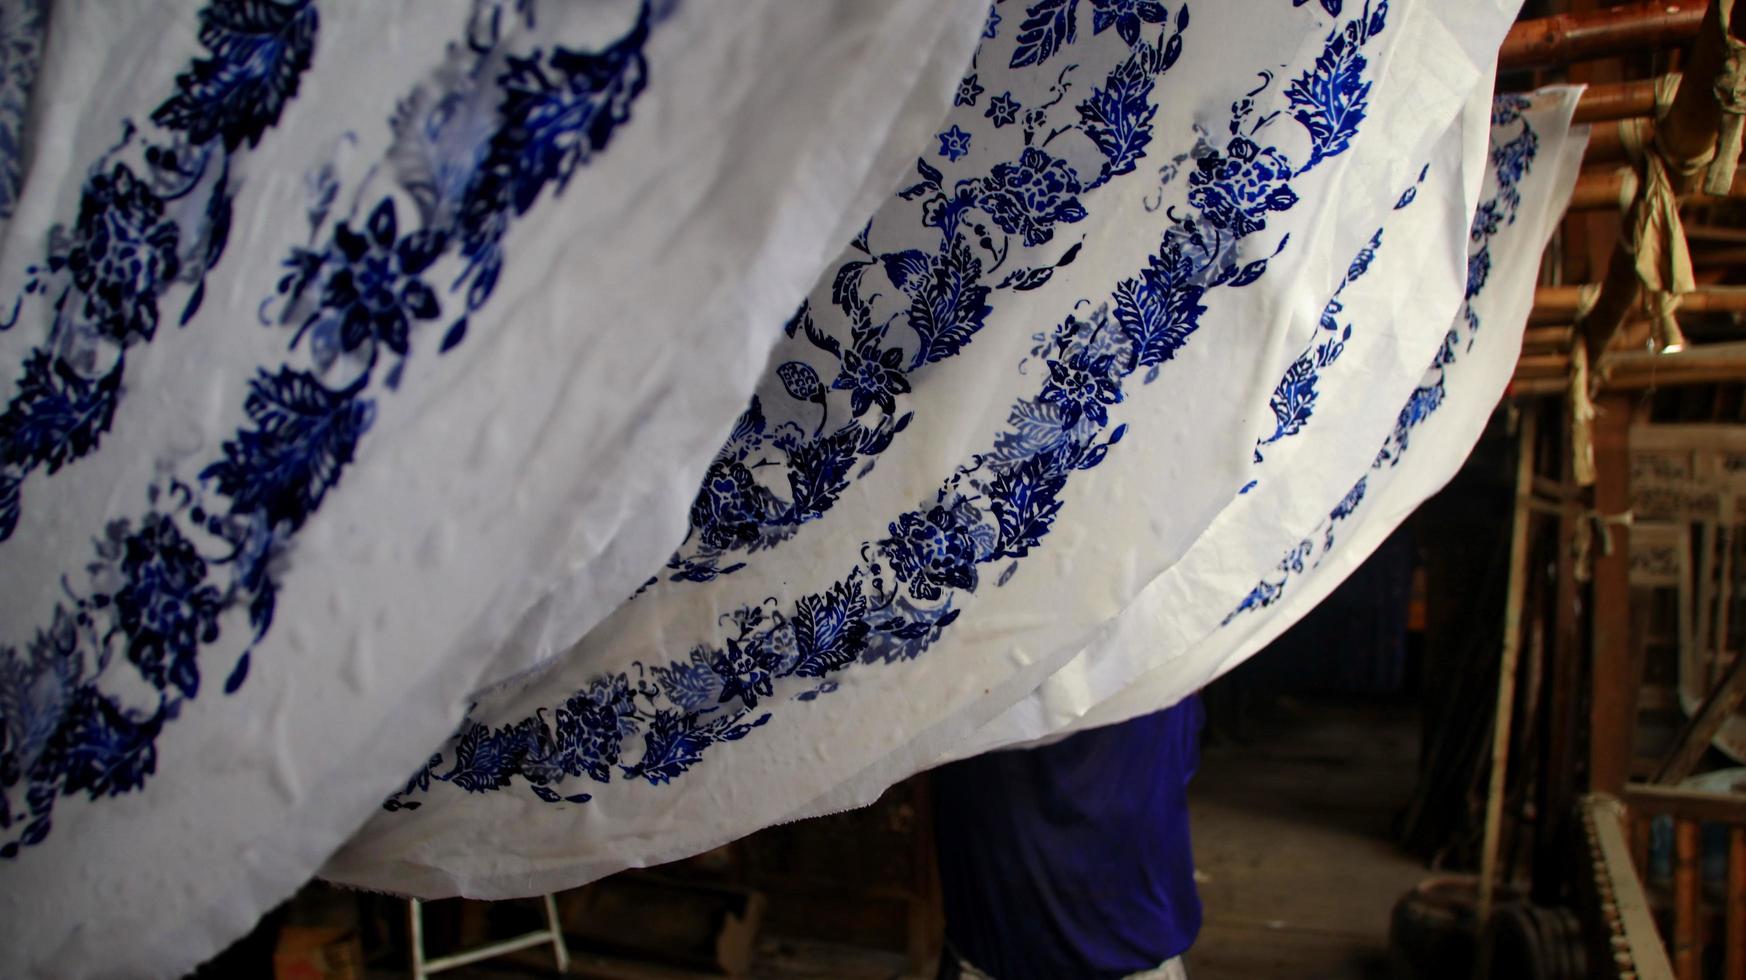 actividad de hacer batik, crear y diseñar telas blancas usando canto y cera golpeando la tela, pekalongan, indonesia, 7 de marzo de 2020 foto